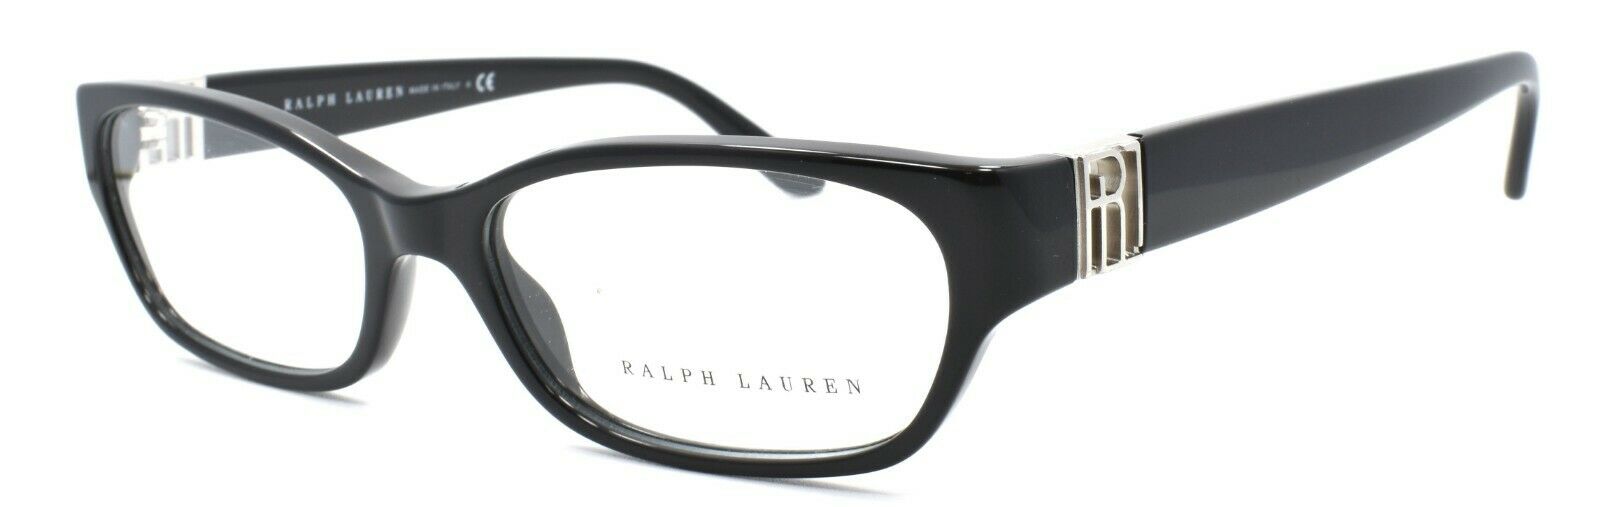 1-Ralph Lauren RL6081 5001 Women's Eyeglasses Frames 52-16-140 Black-713132375204-IKSpecs